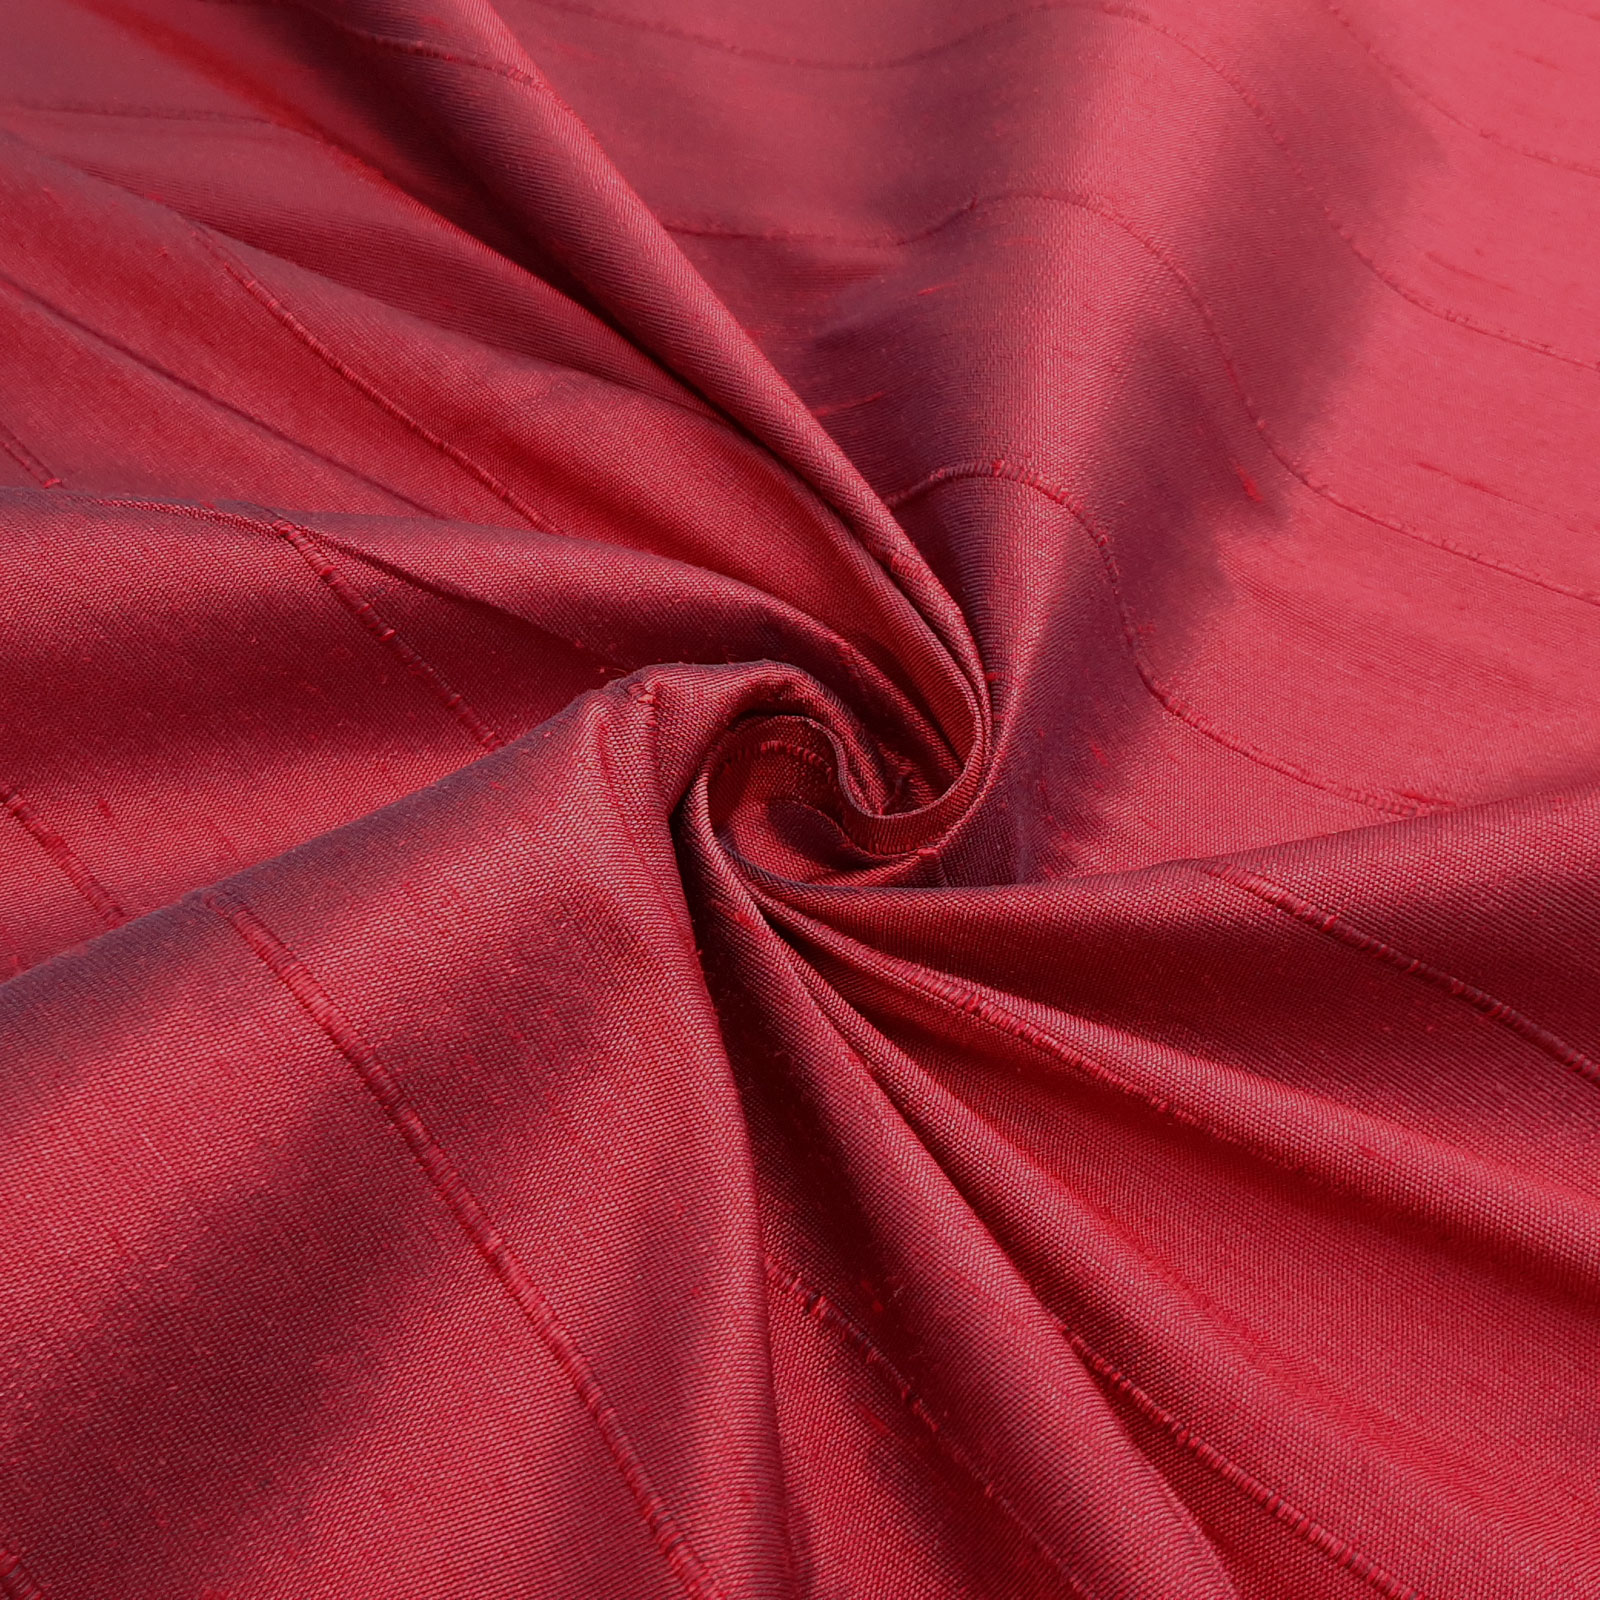 Sahco® B057 - Estofos e tecido decorativo - 100% seda – Rubi